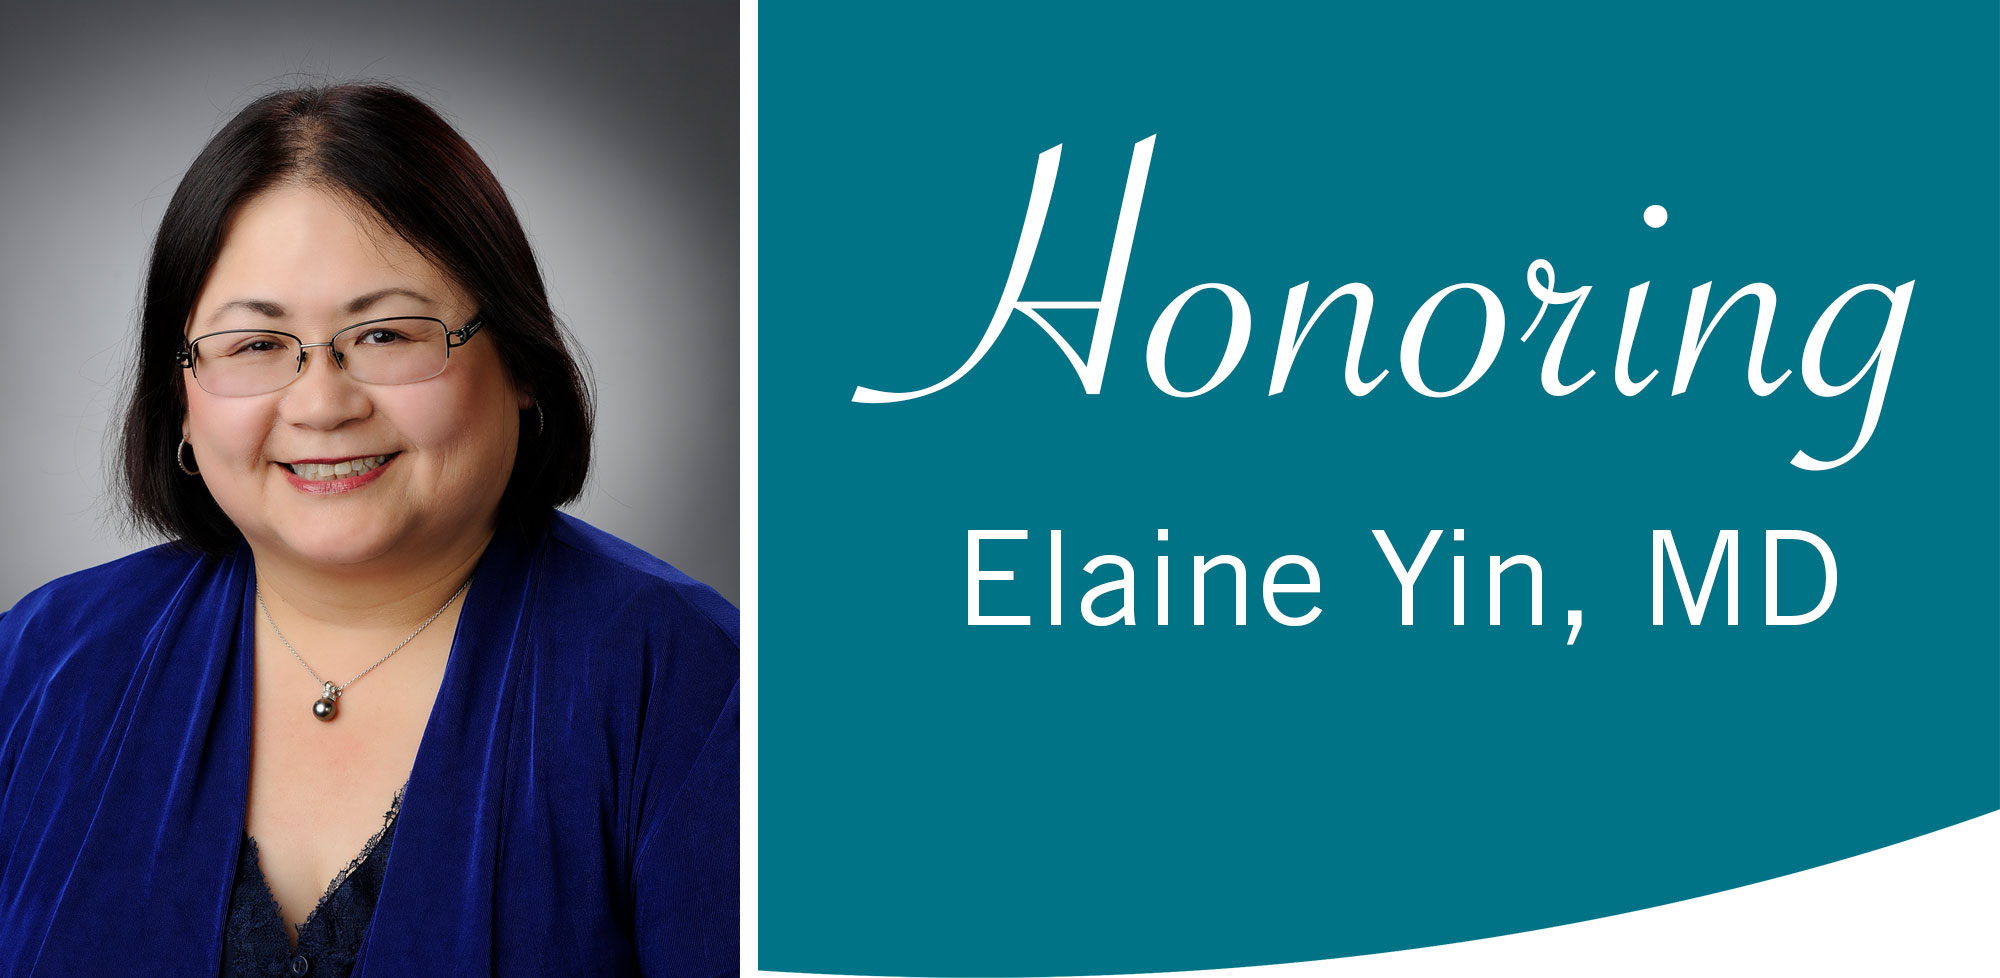 Elaine Yin, MD